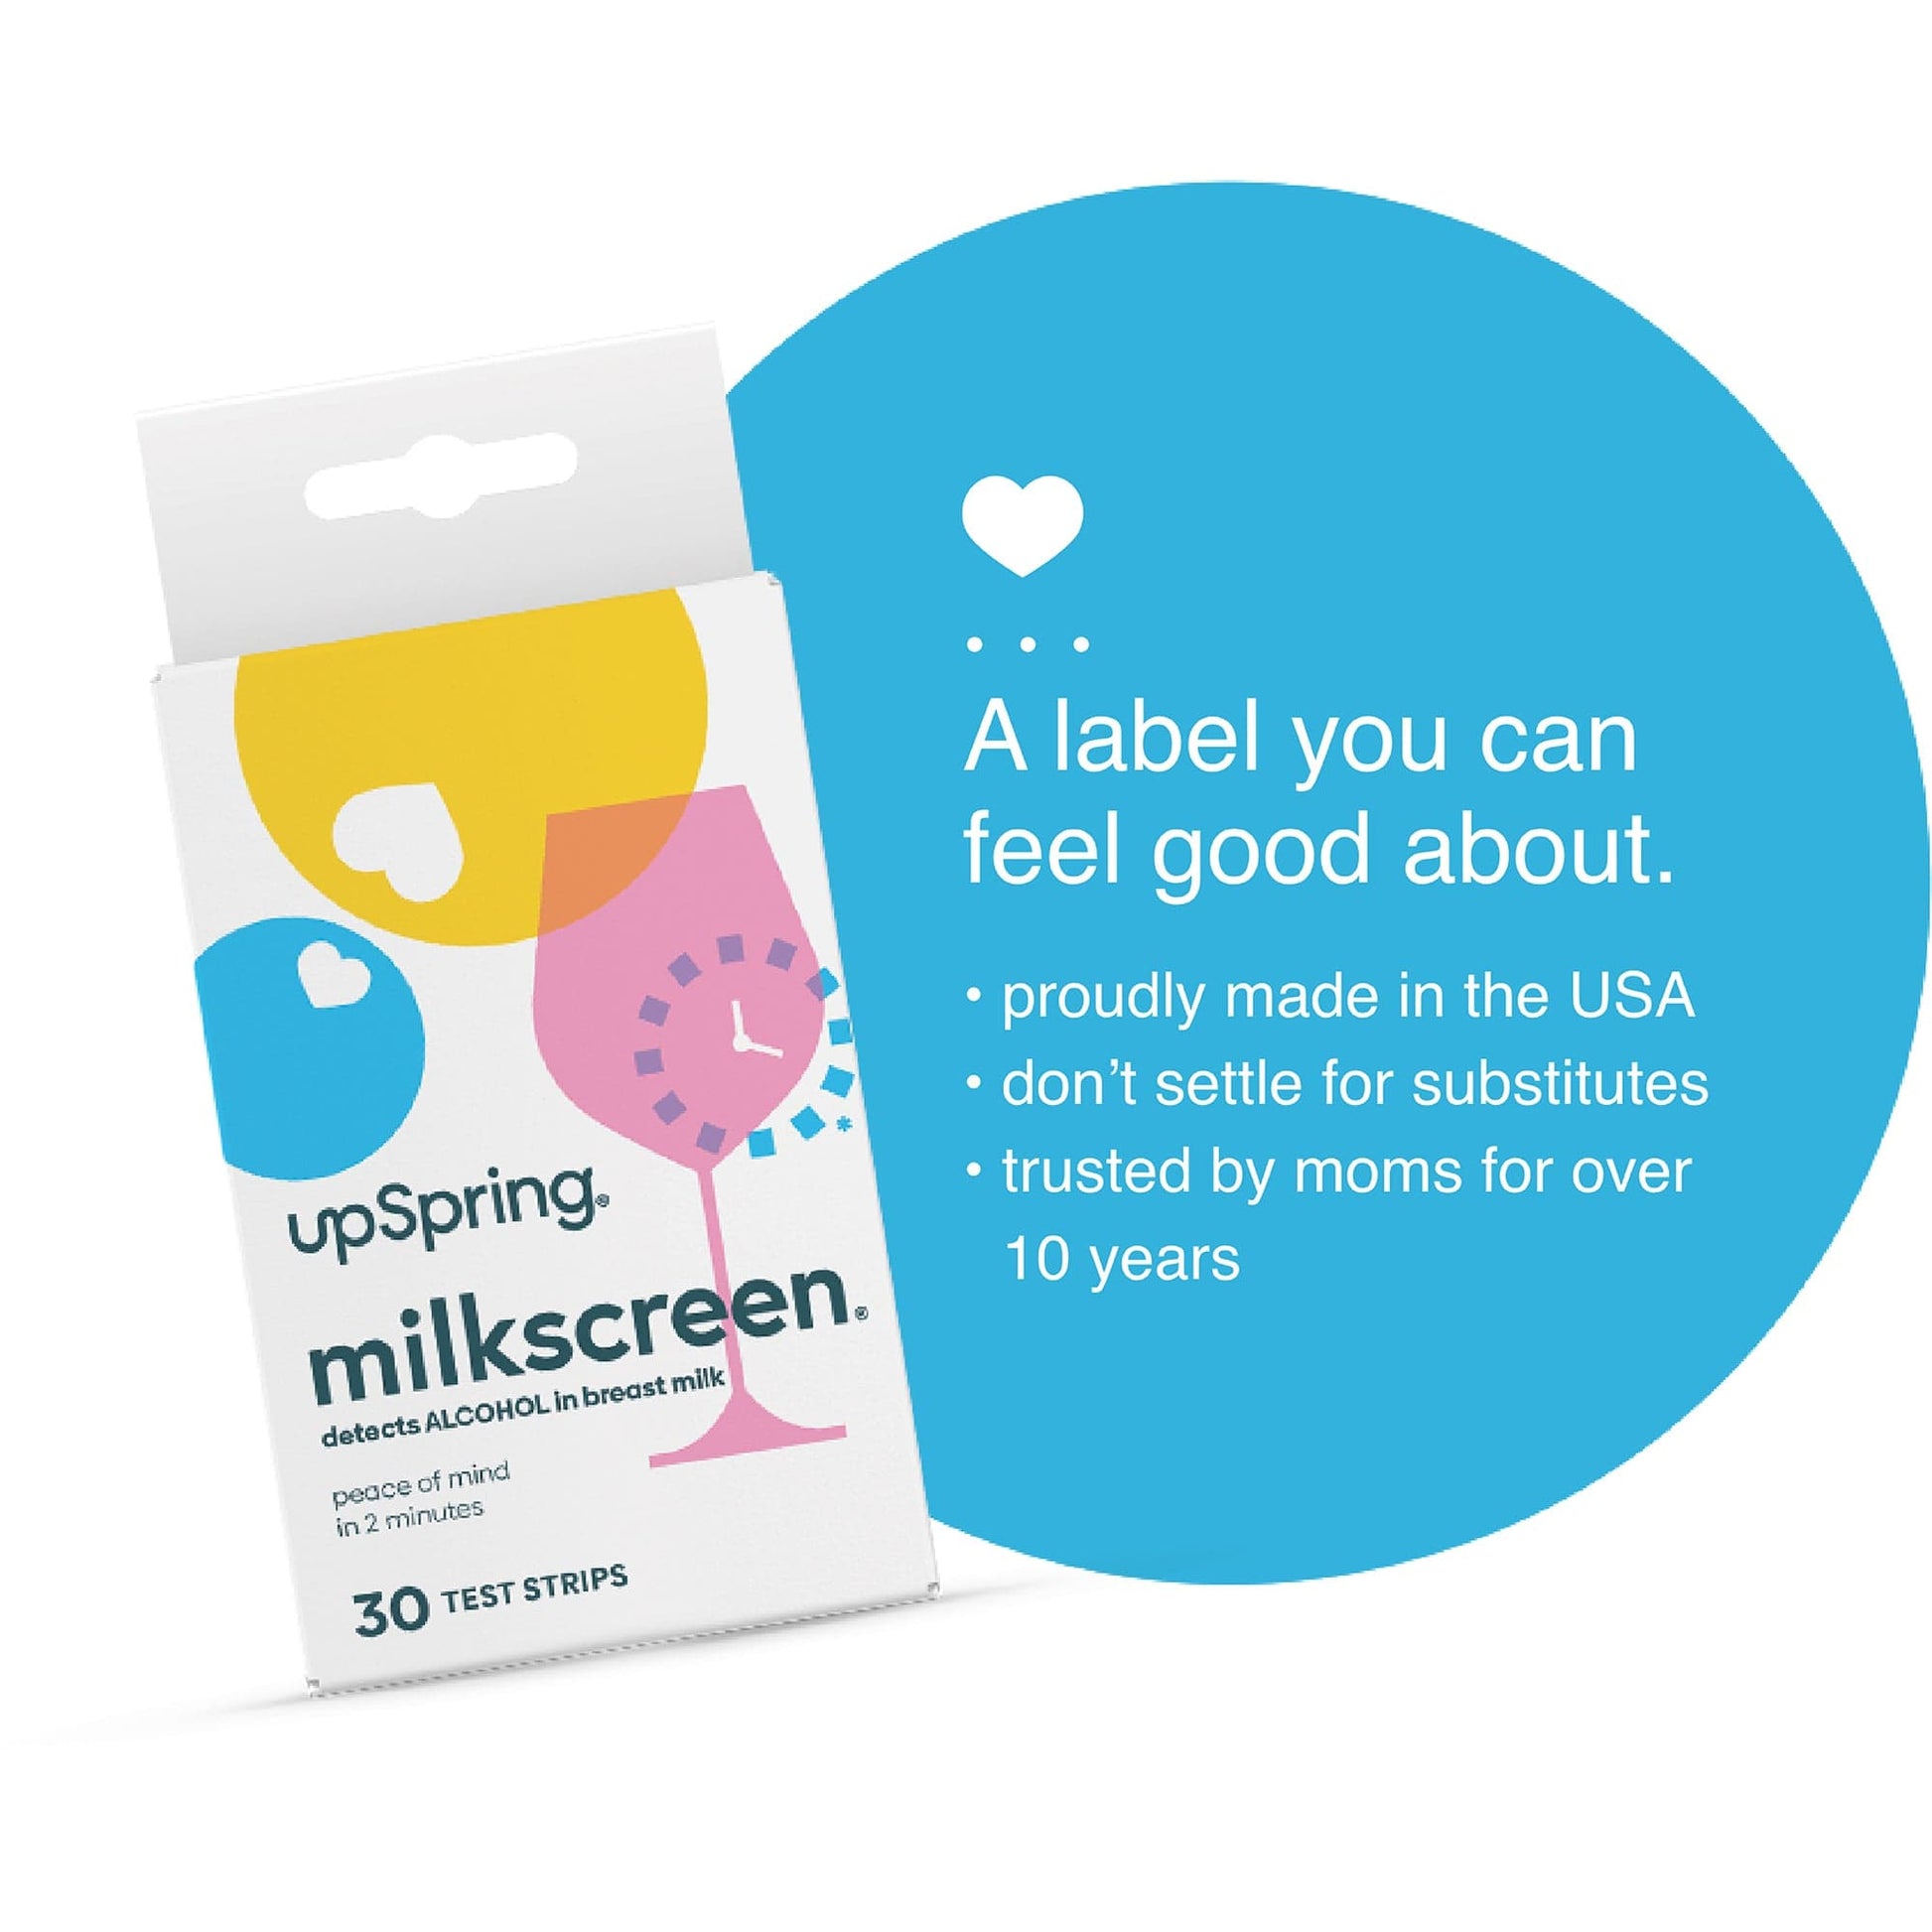 UpSpring Milkscreen Test Strips for Breast Milk